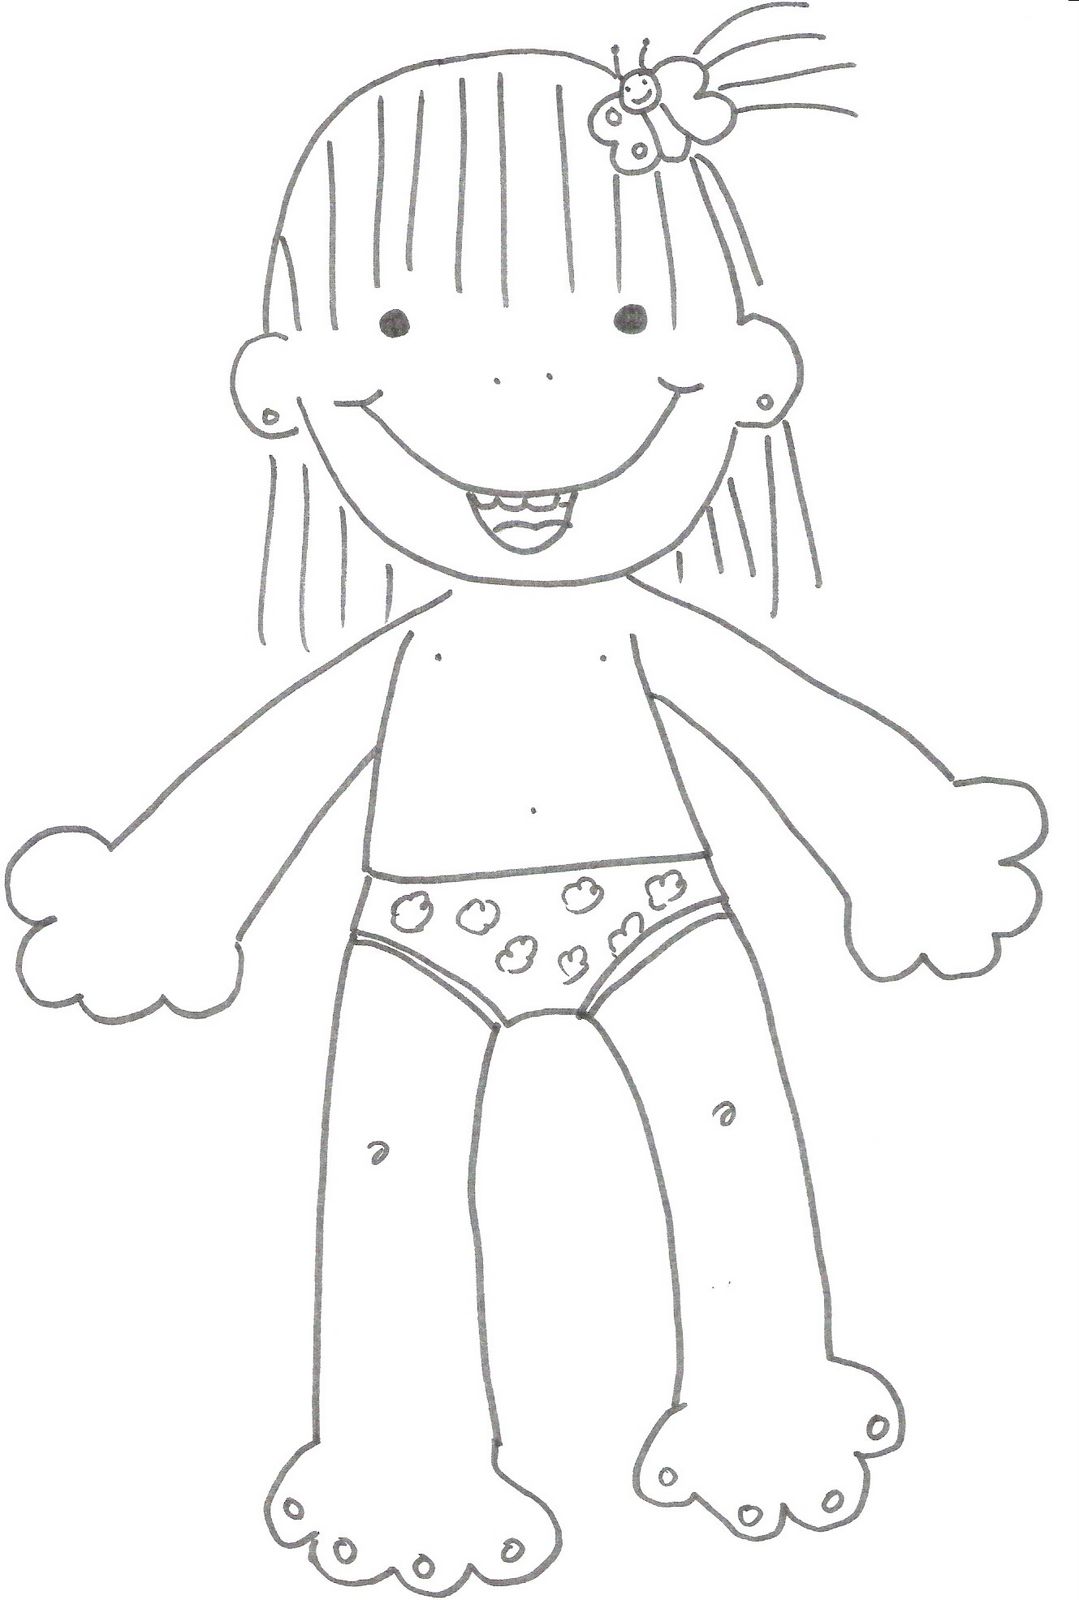 El rincon de la infancia: ♥ Dibujos de ropas para niños y niñas ♥